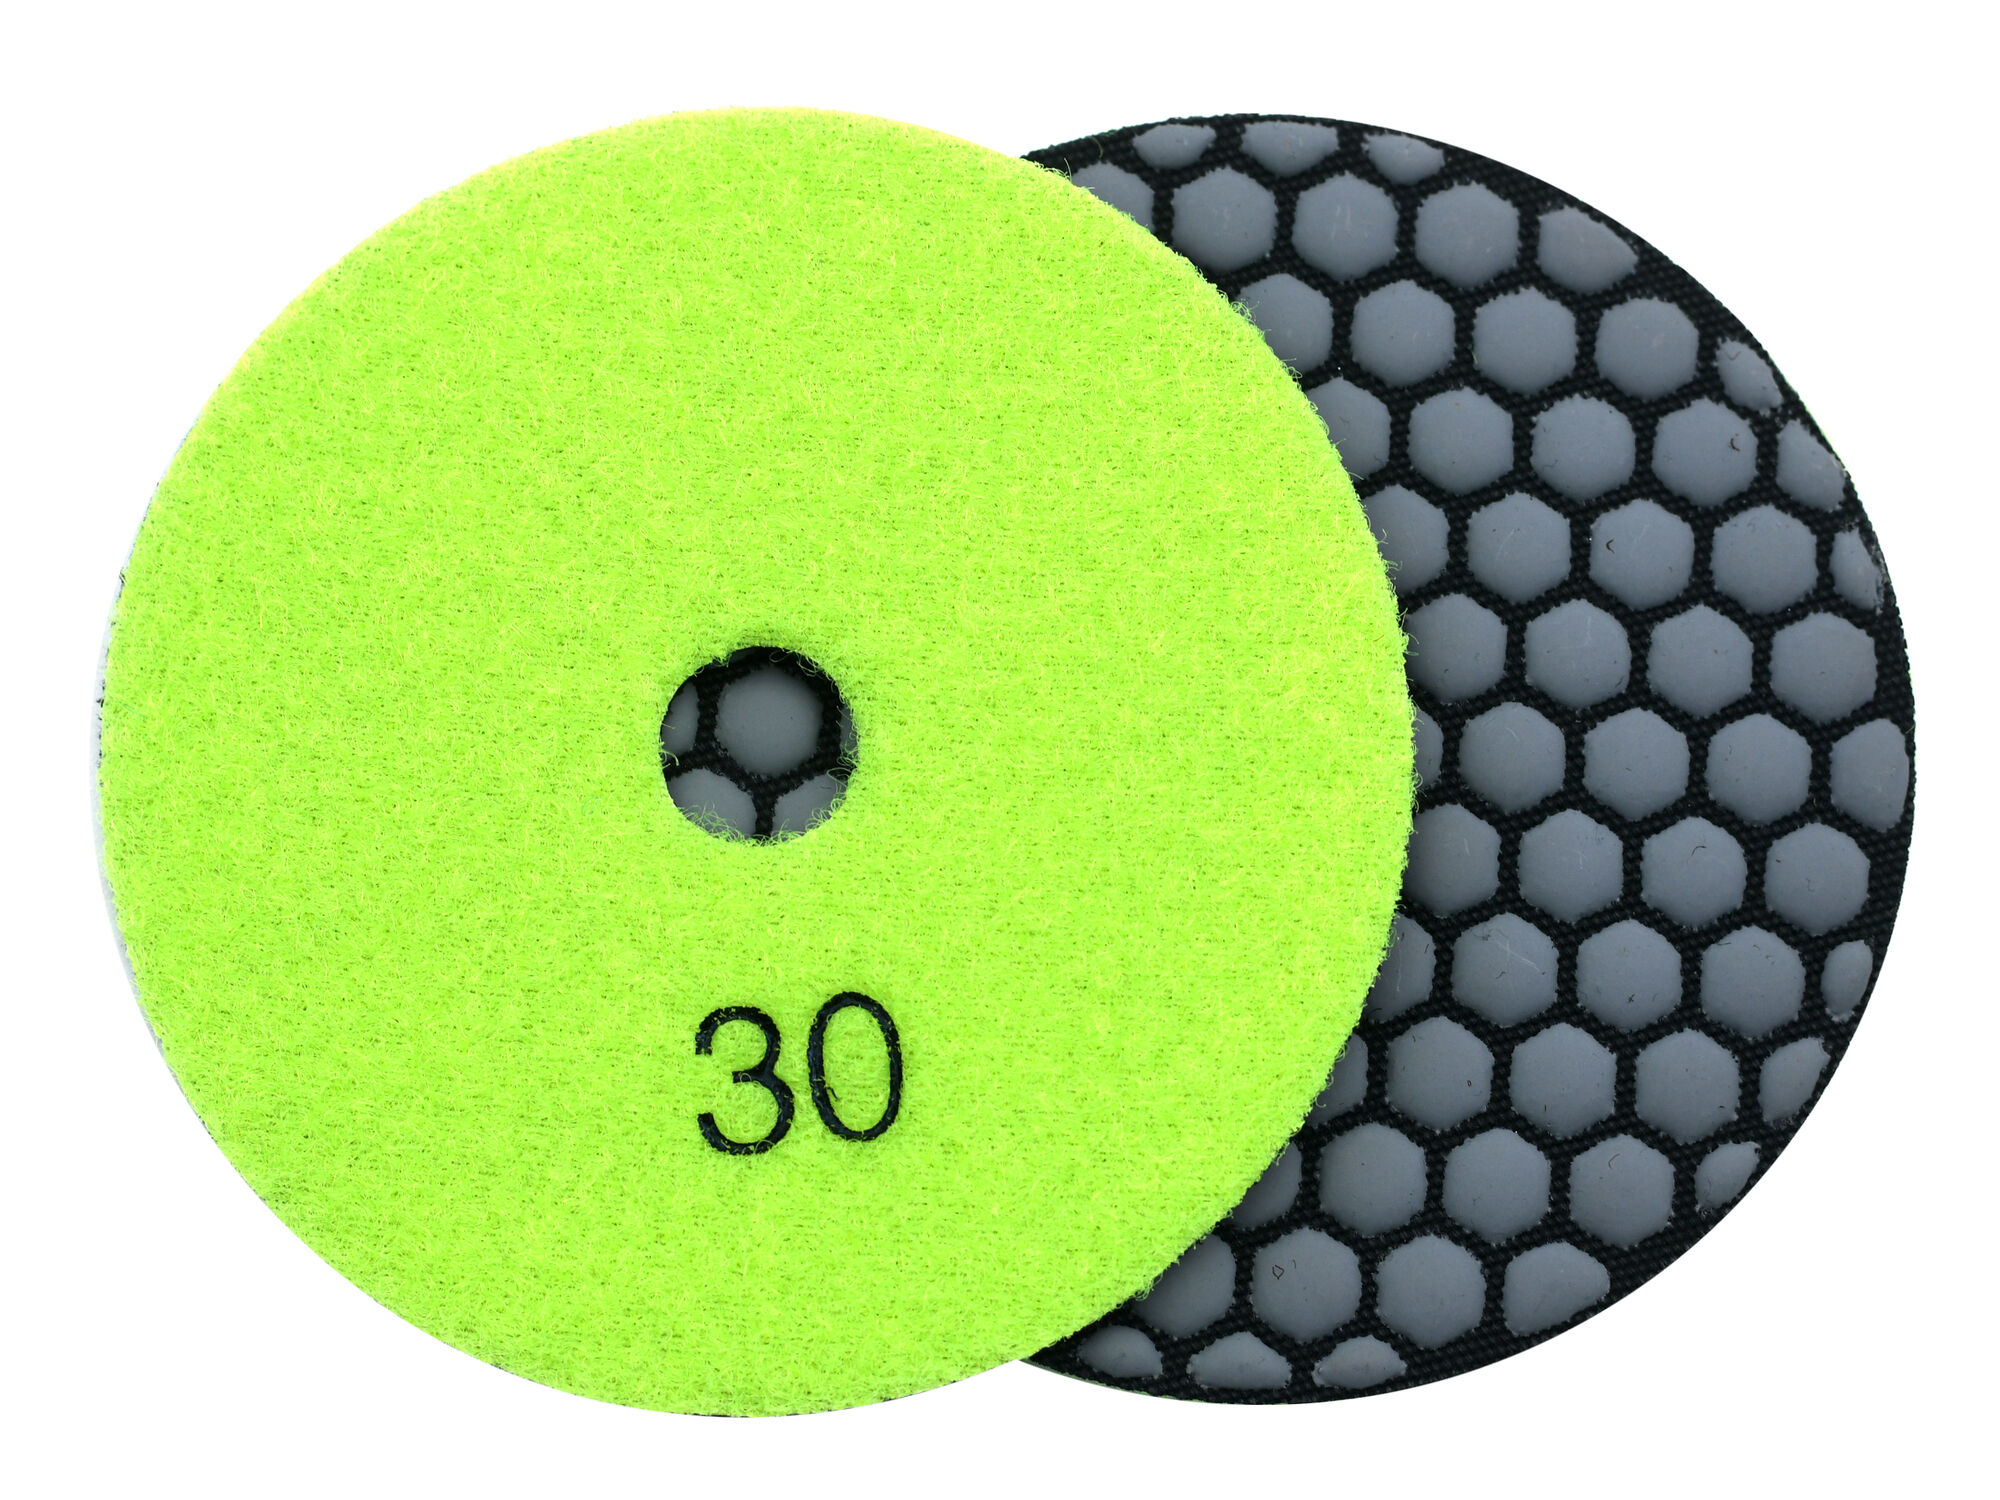 Алмазные гибкие полировальные диски № 30 d 100 мм по камню EHWA (Ихва) сухие